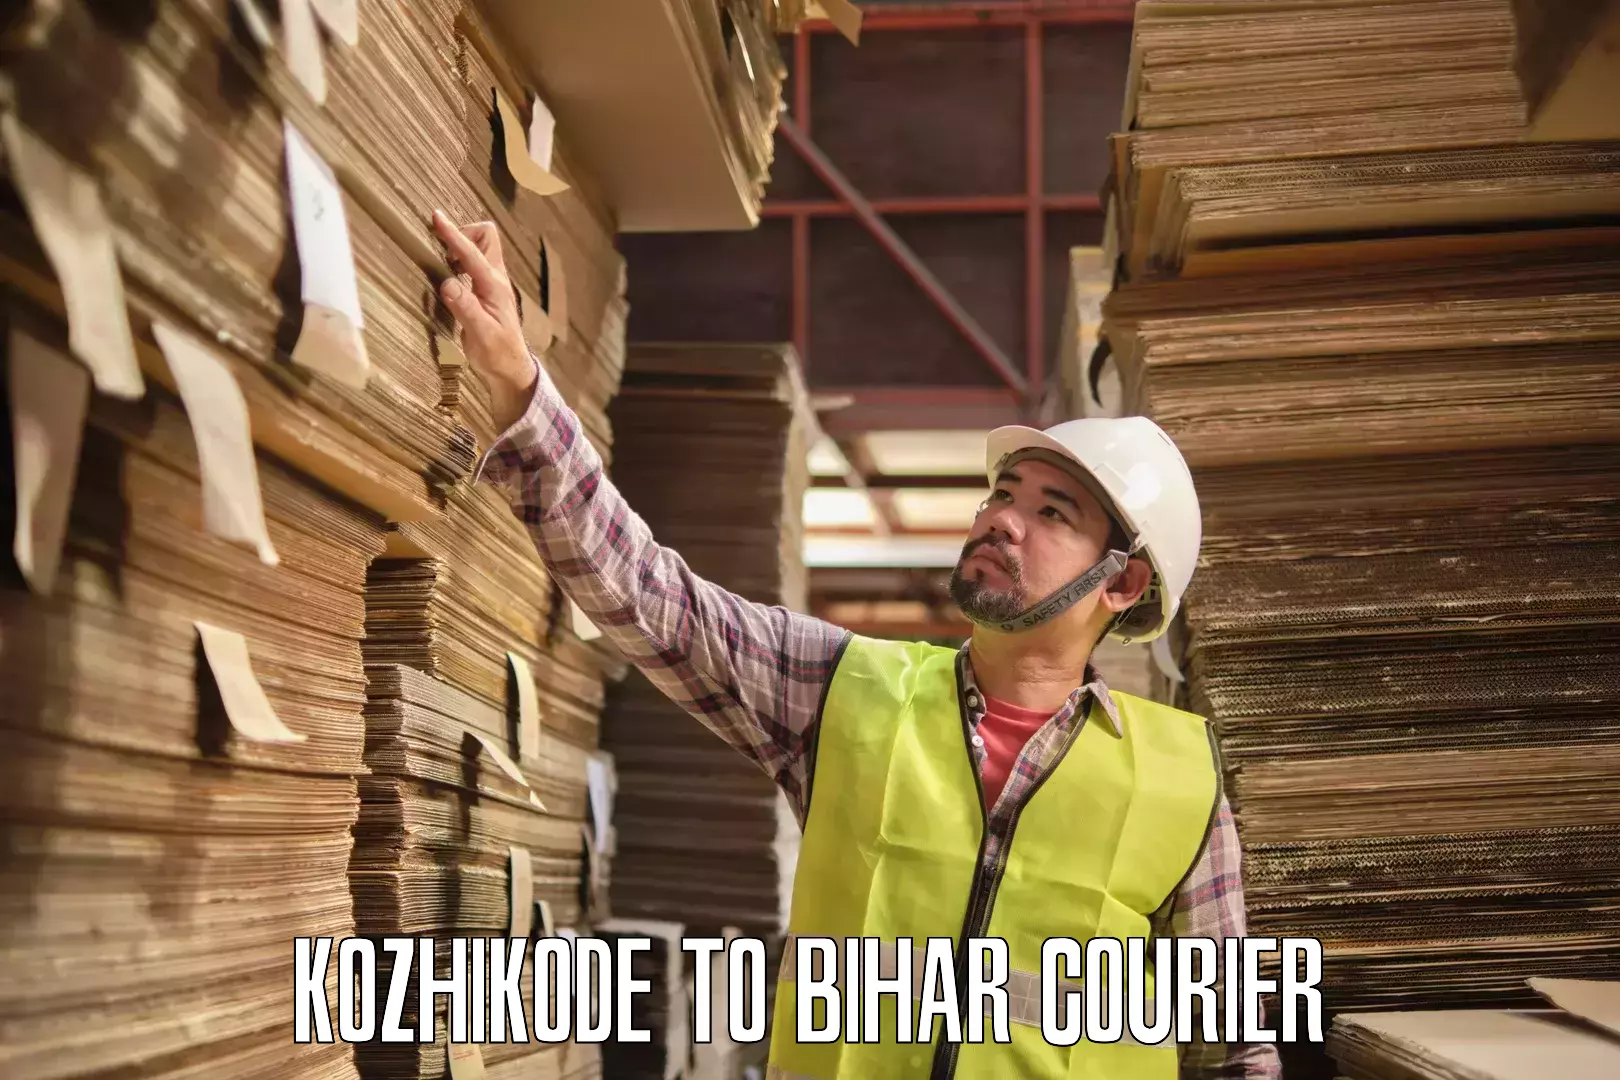 Bulk order courier Kozhikode to Aurangabad Bihar